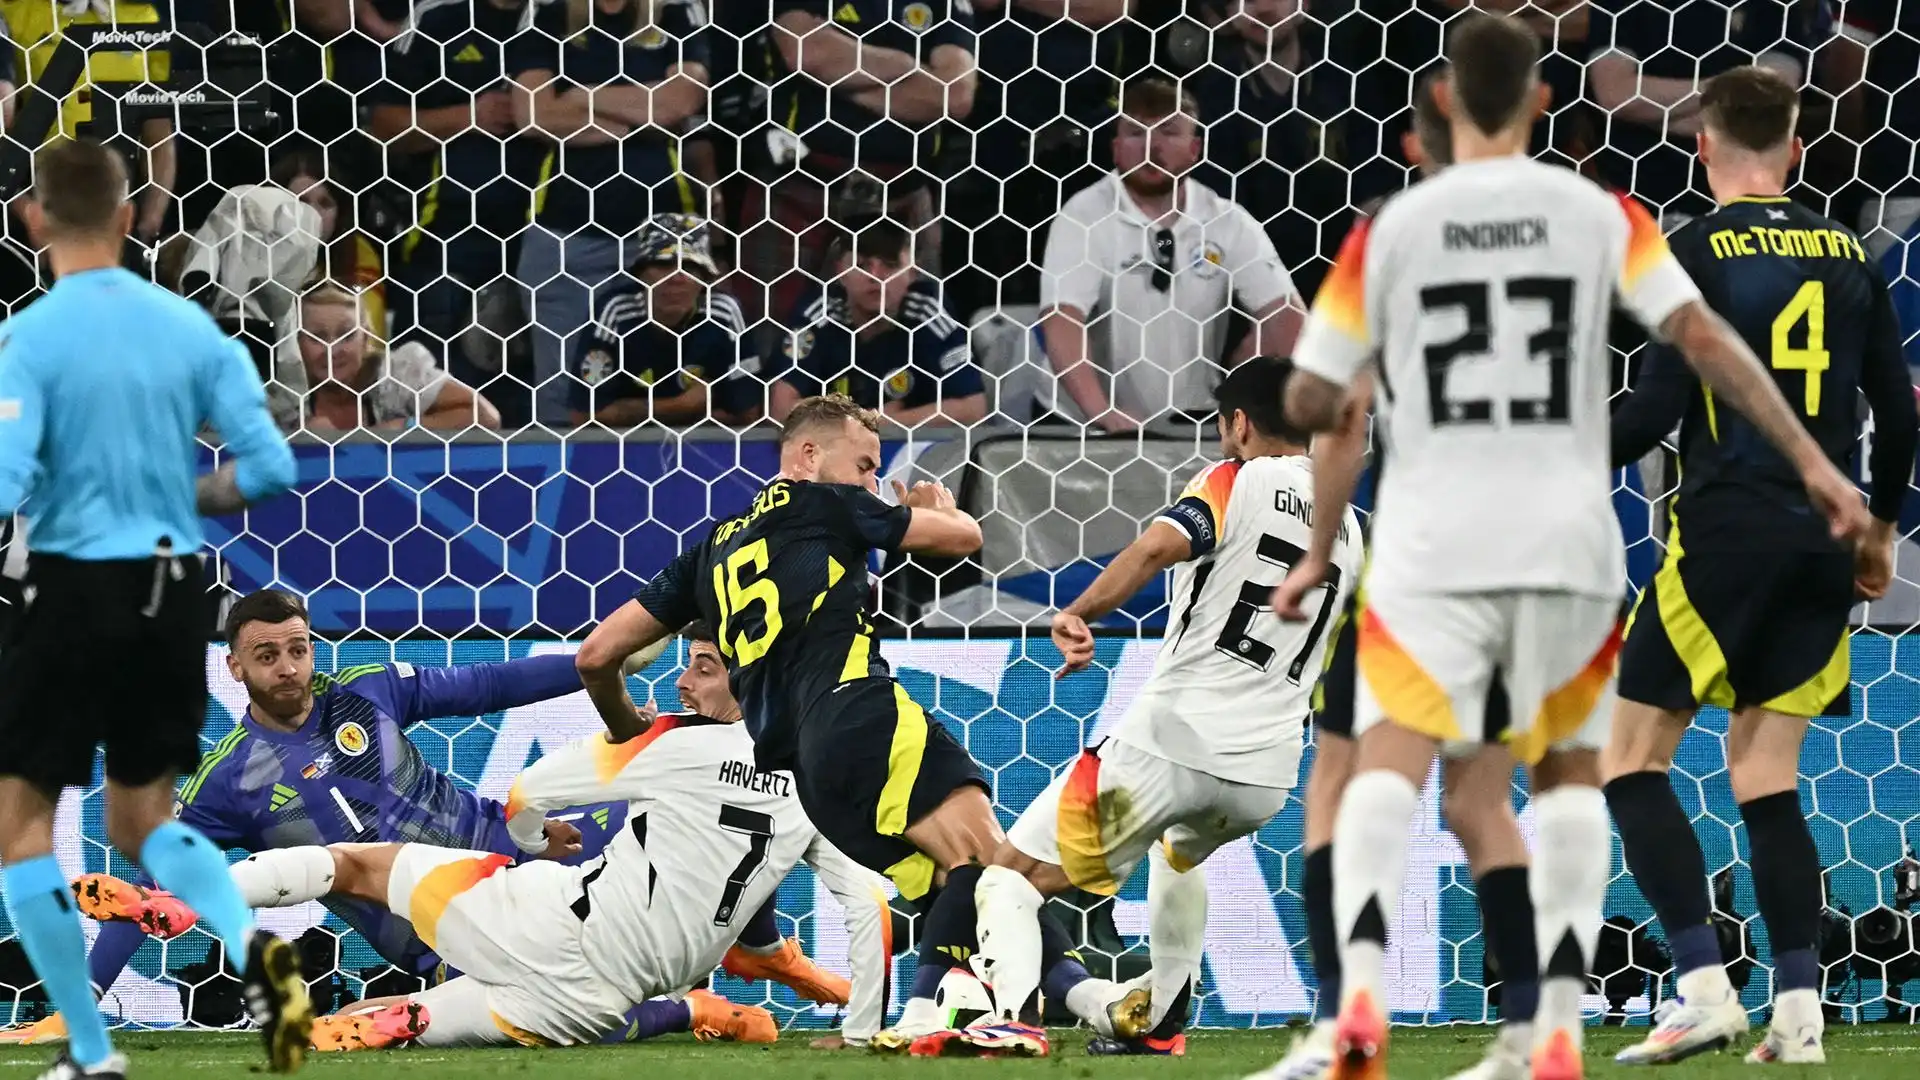 La Germania ha segnato la terza rete con Havertz su calcio di rigore